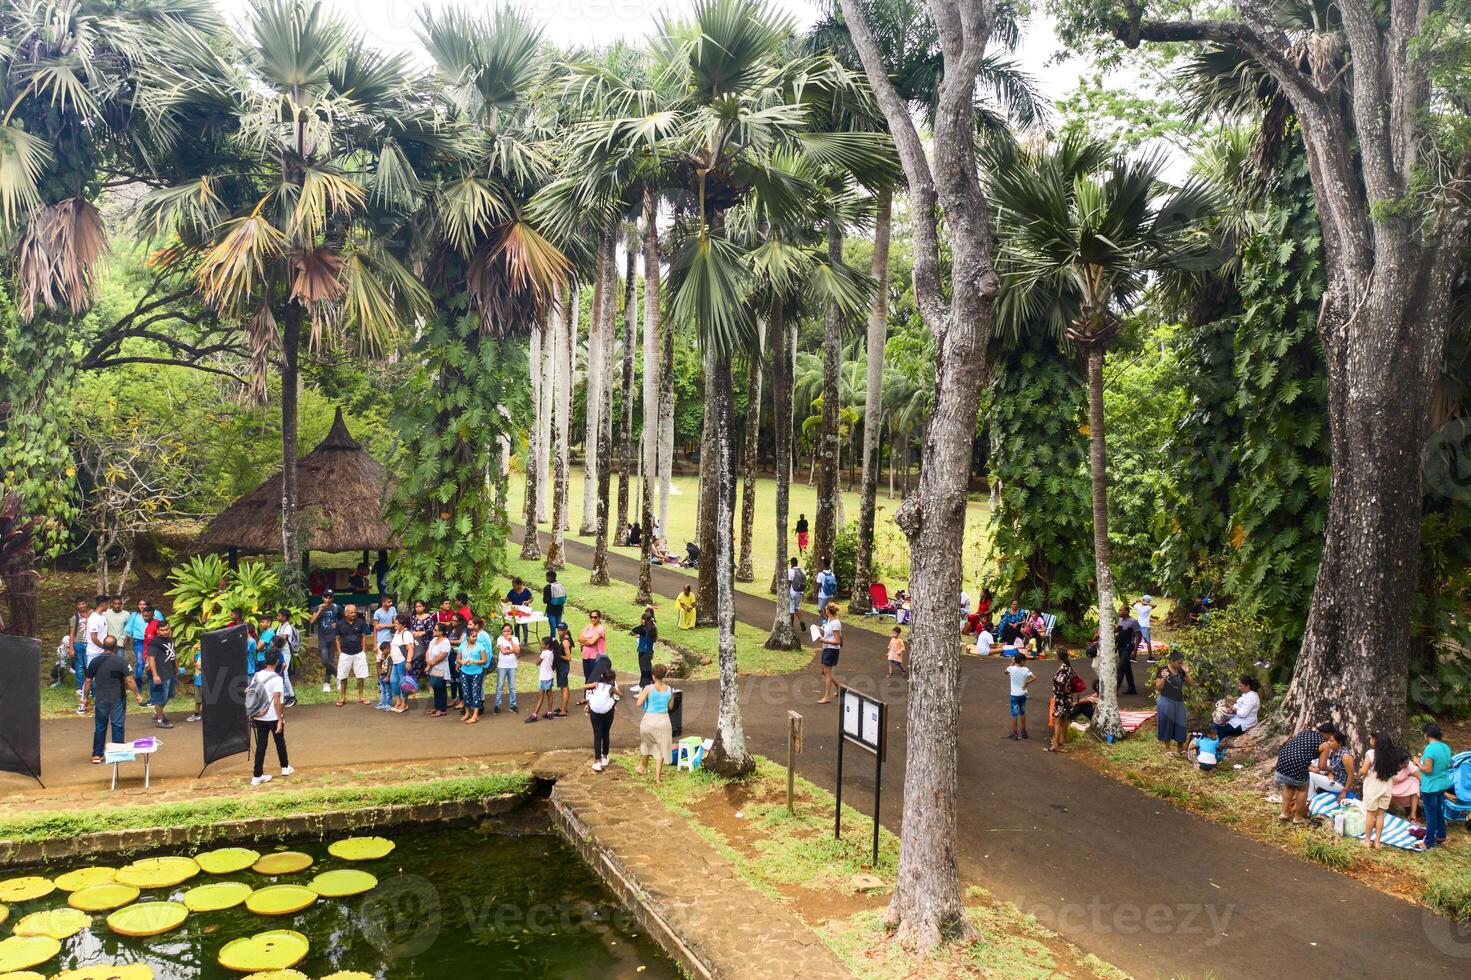 december 08, 2019.botanisk trädgård i pamplemus, lokalbefolkningen koppla av i de trädgård.mauritius. foto